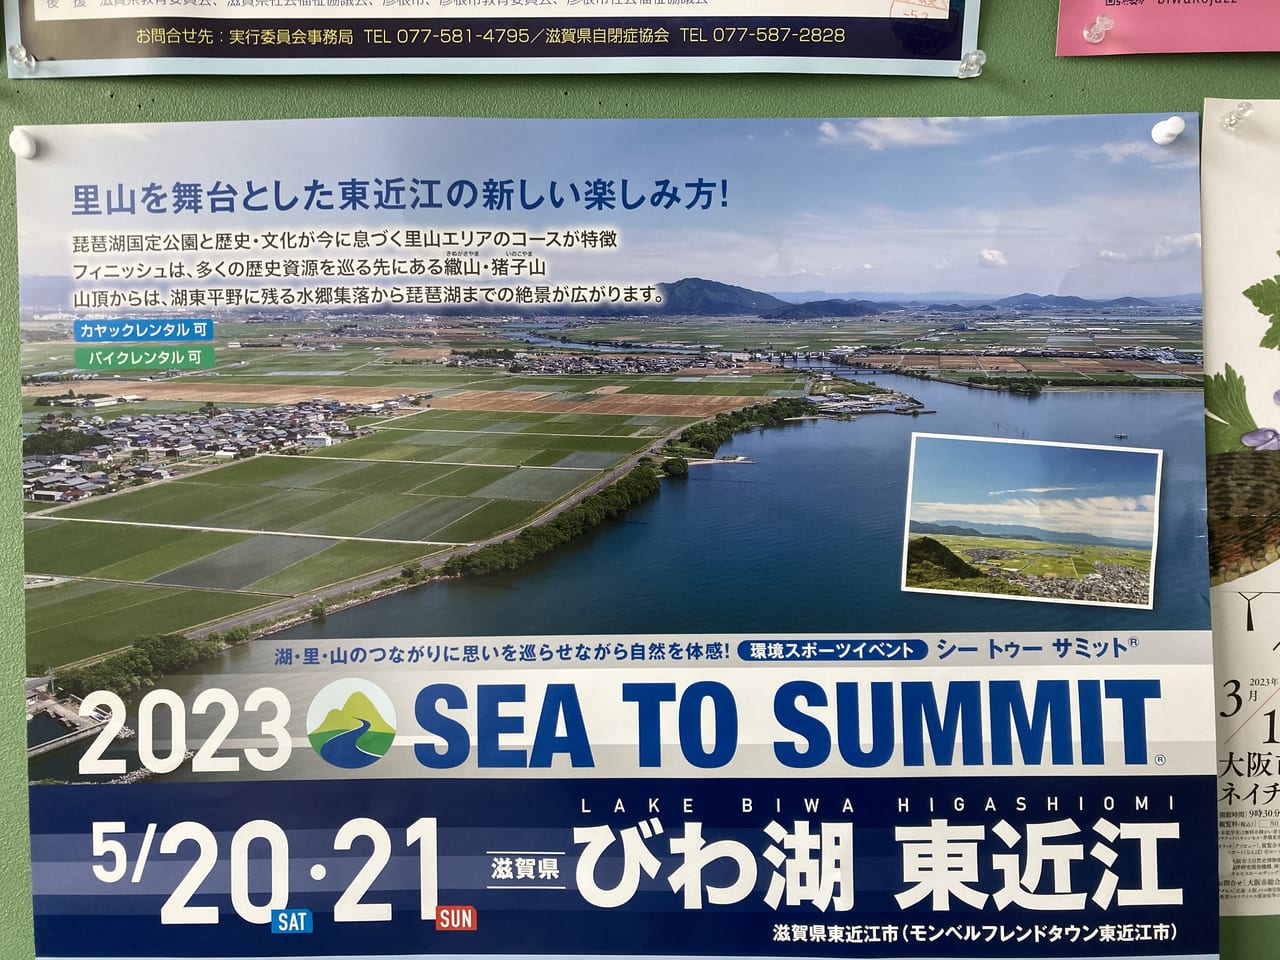 びわ湖 東近江SEA TO SUMMIT 2023-5